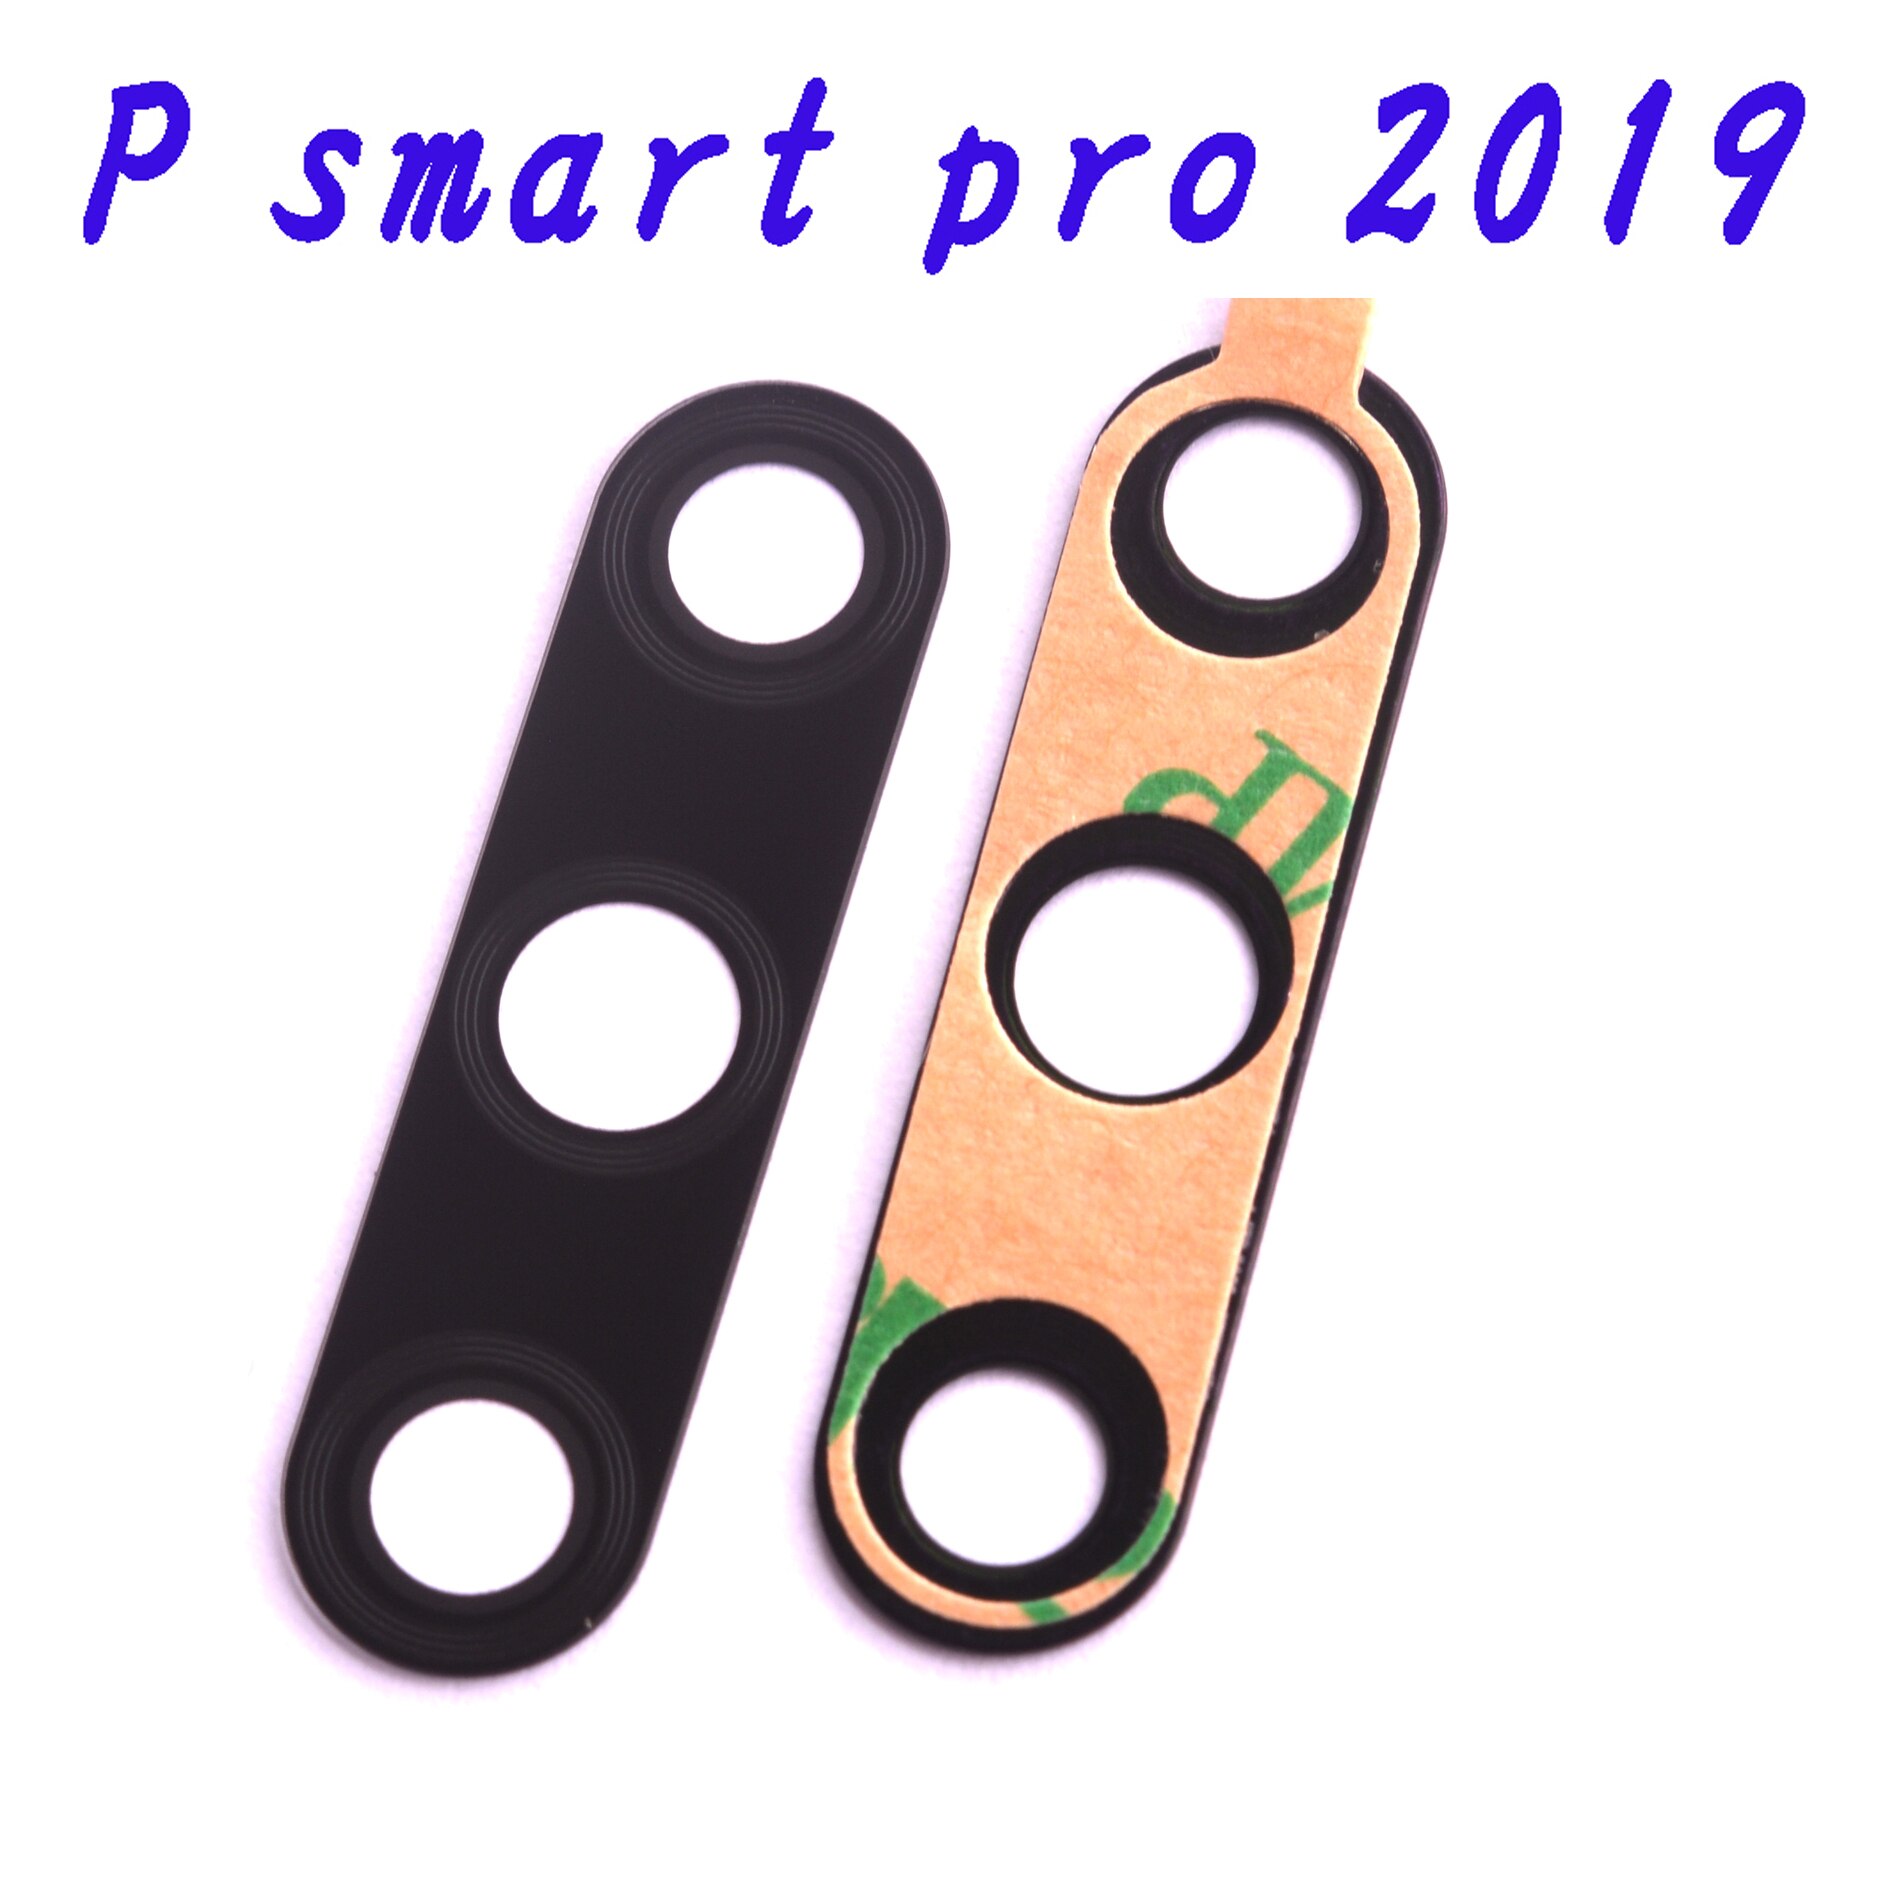 for P smart pro original rear camera glass lens for Huawei P smart + P smart +: P smart pro  2019